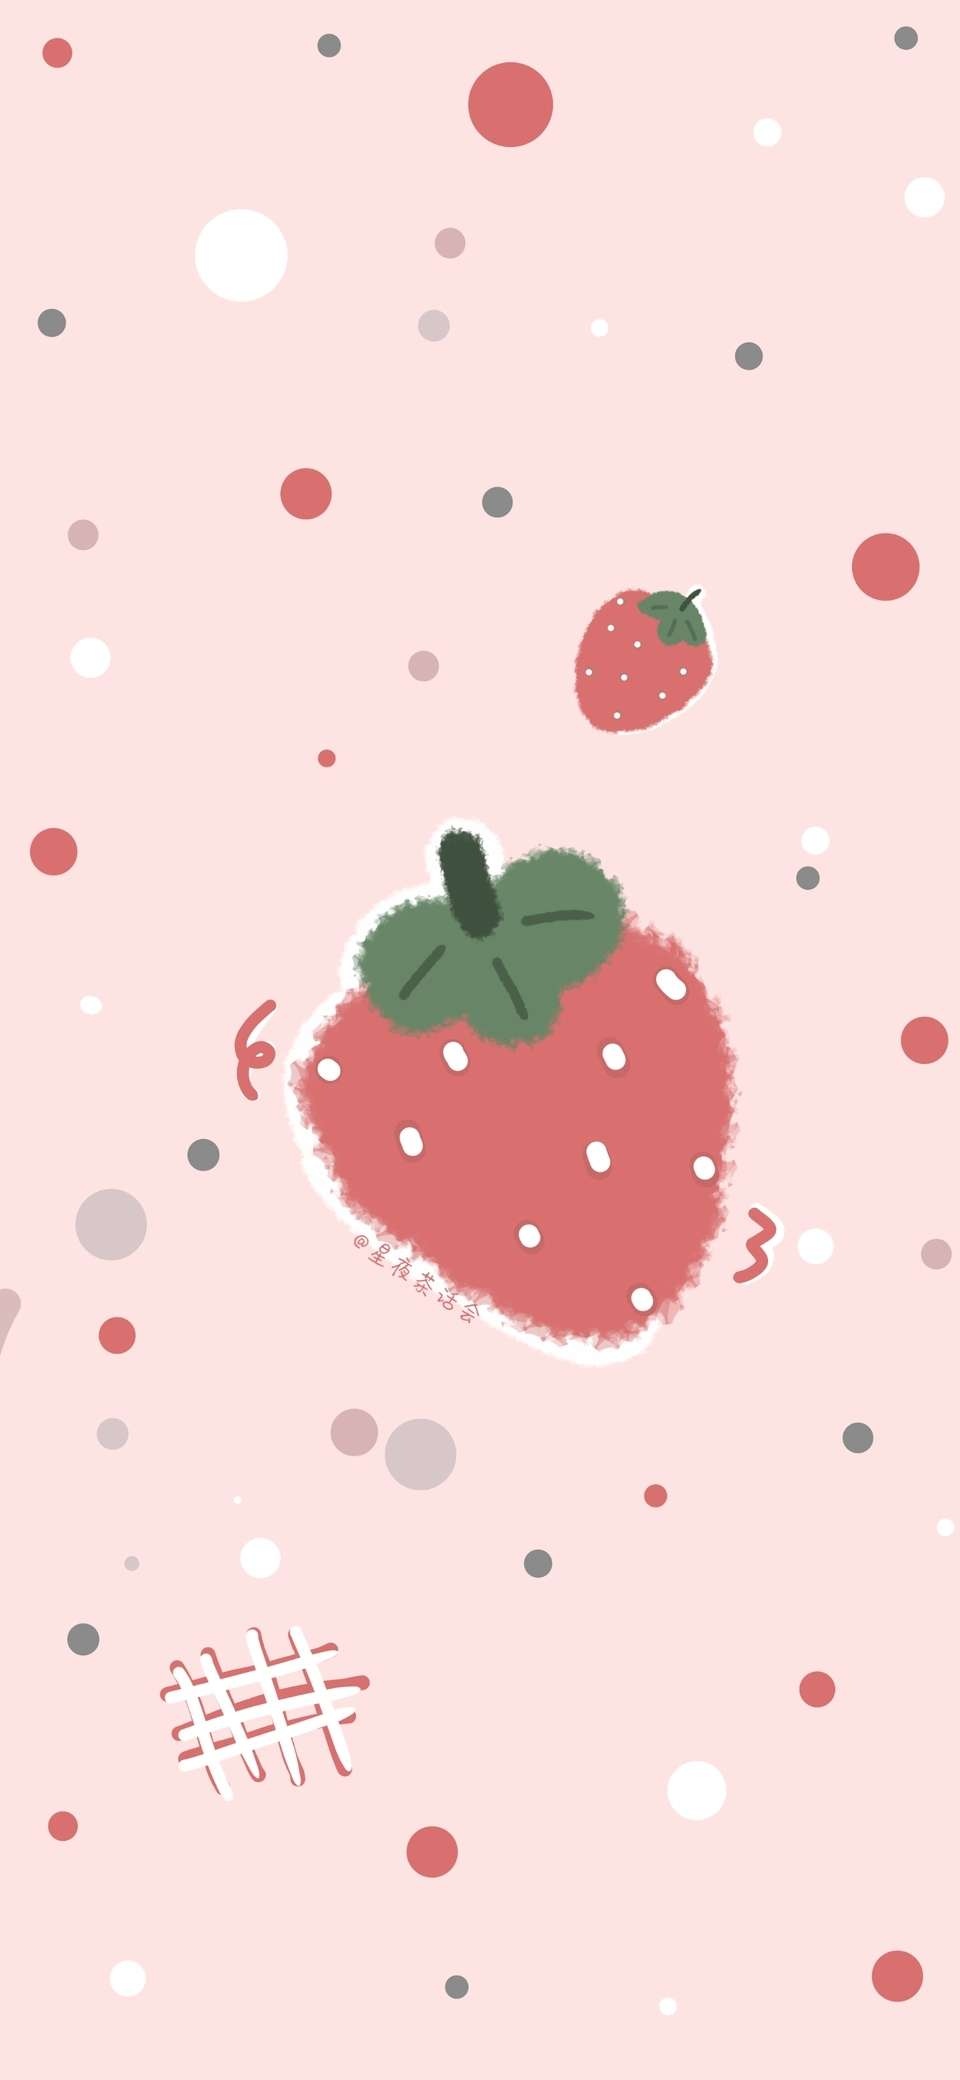 草莓高清壁纸动漫图片